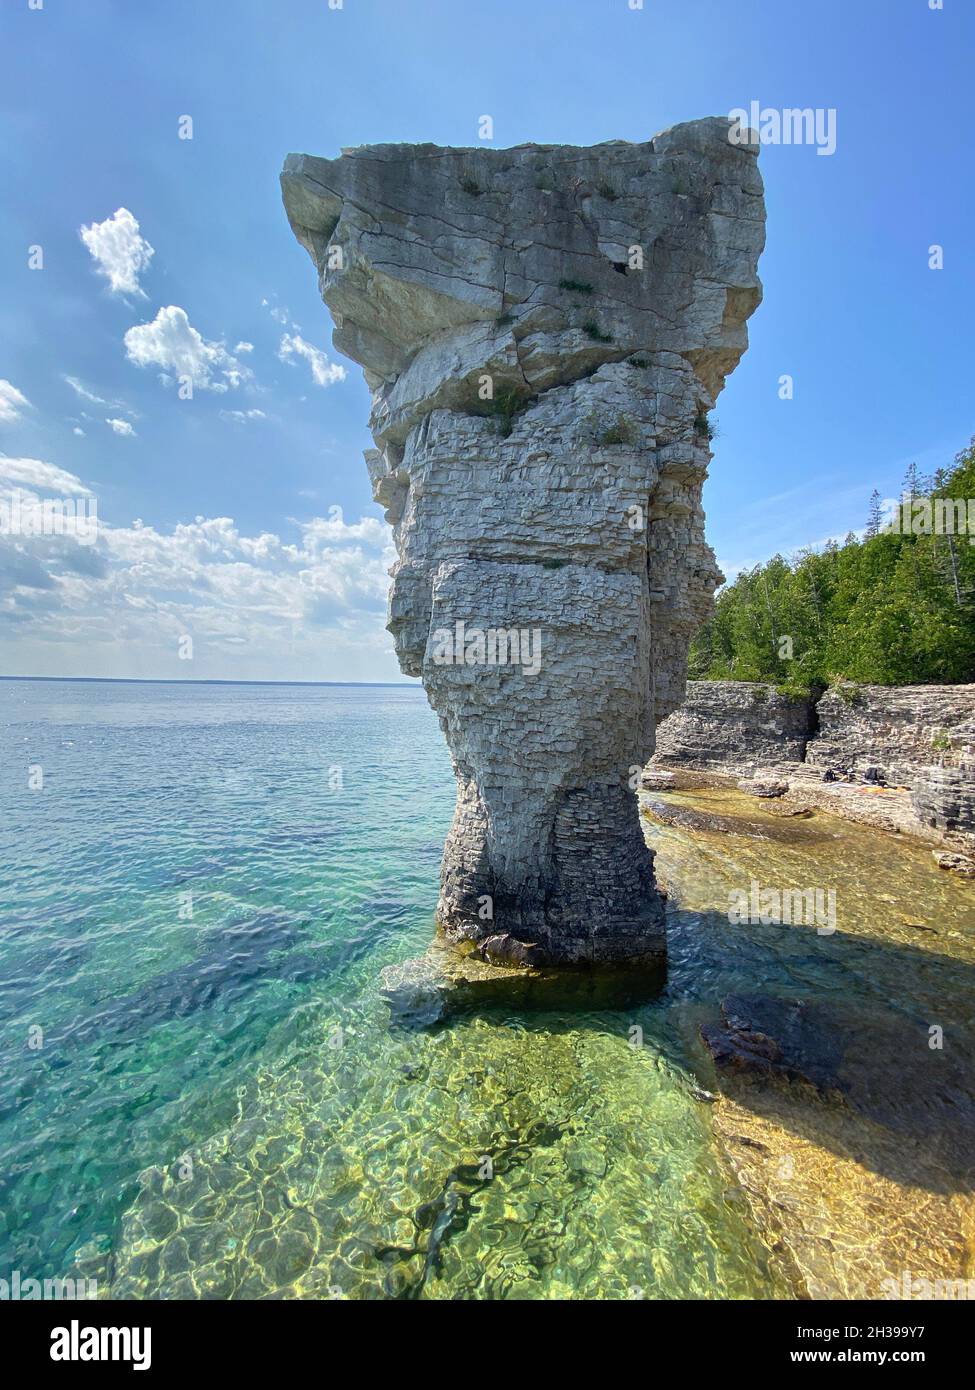 La roche de pilier s'élève des eaux de la baie Georgienne sur l'île Flowerpot dans le parc marin national Fathom Five, lac Huron, Canada Banque D'Images